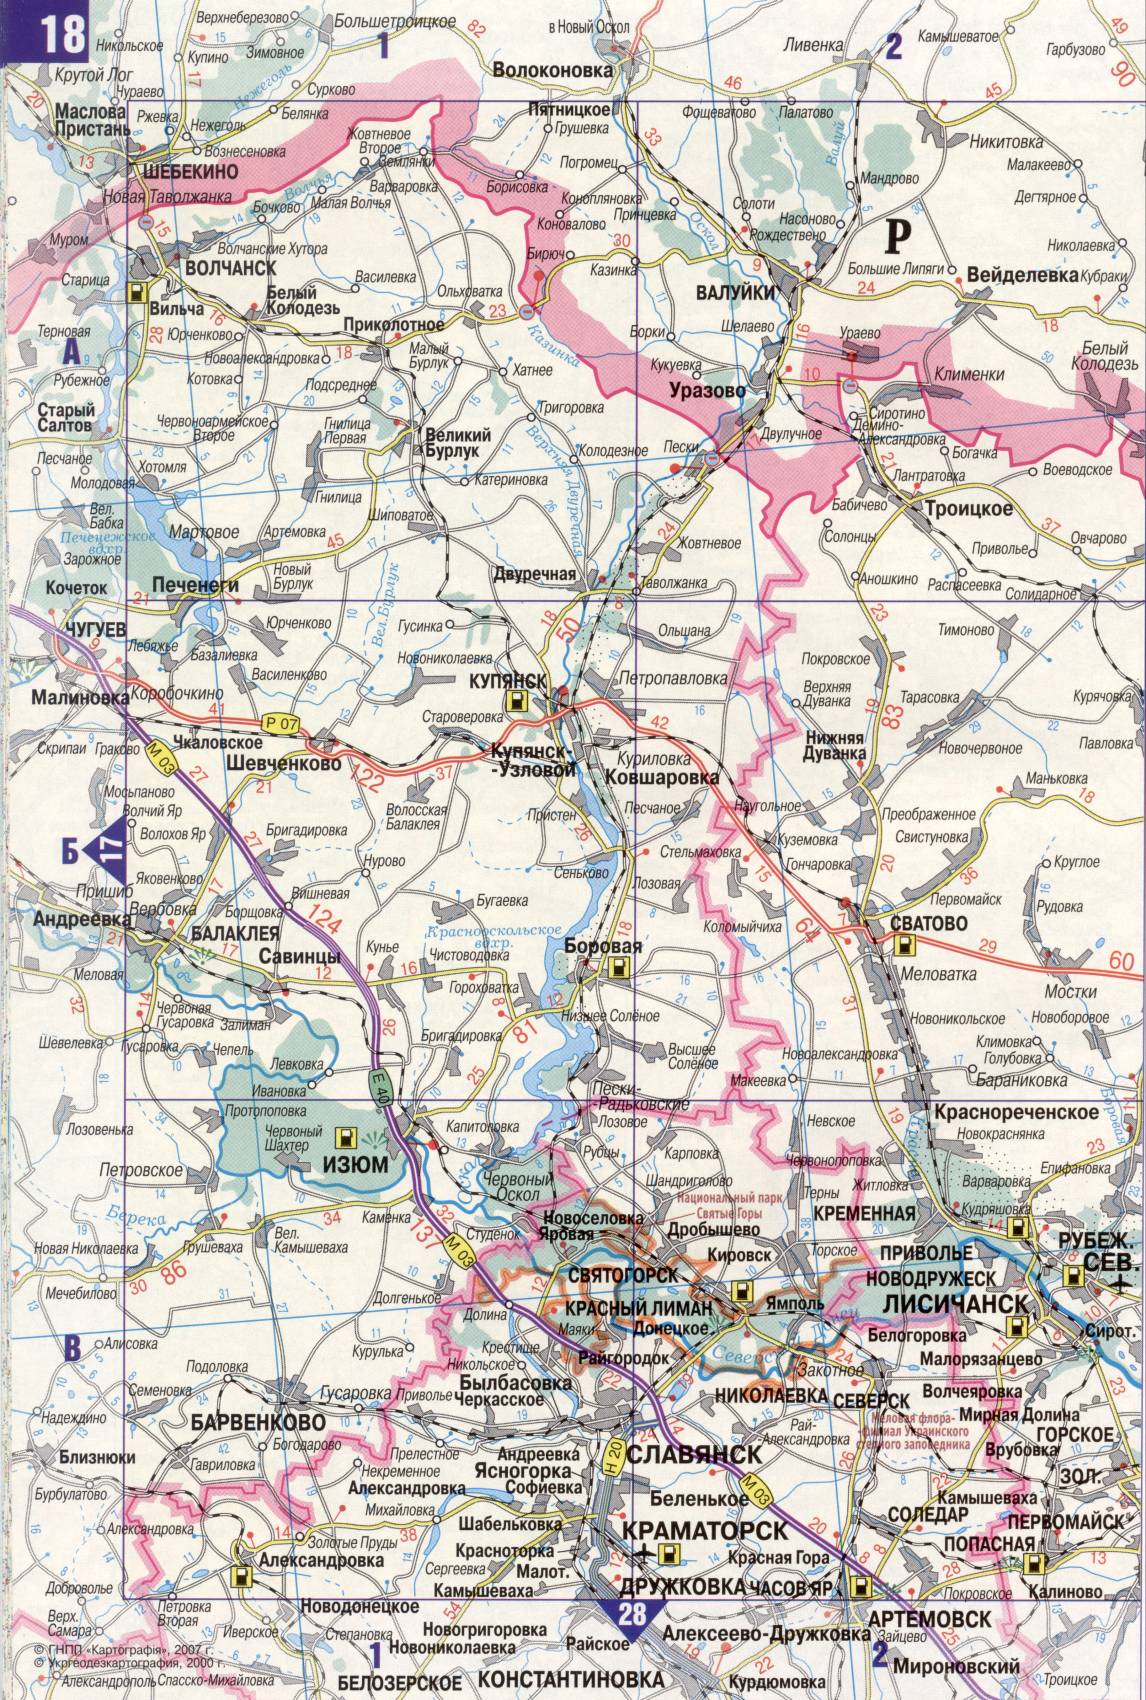 Karte der Ukraine. Detaillierte Straßenkarte der Ukraine avtomobilnog Satin. kostenlos herunterladen, I1